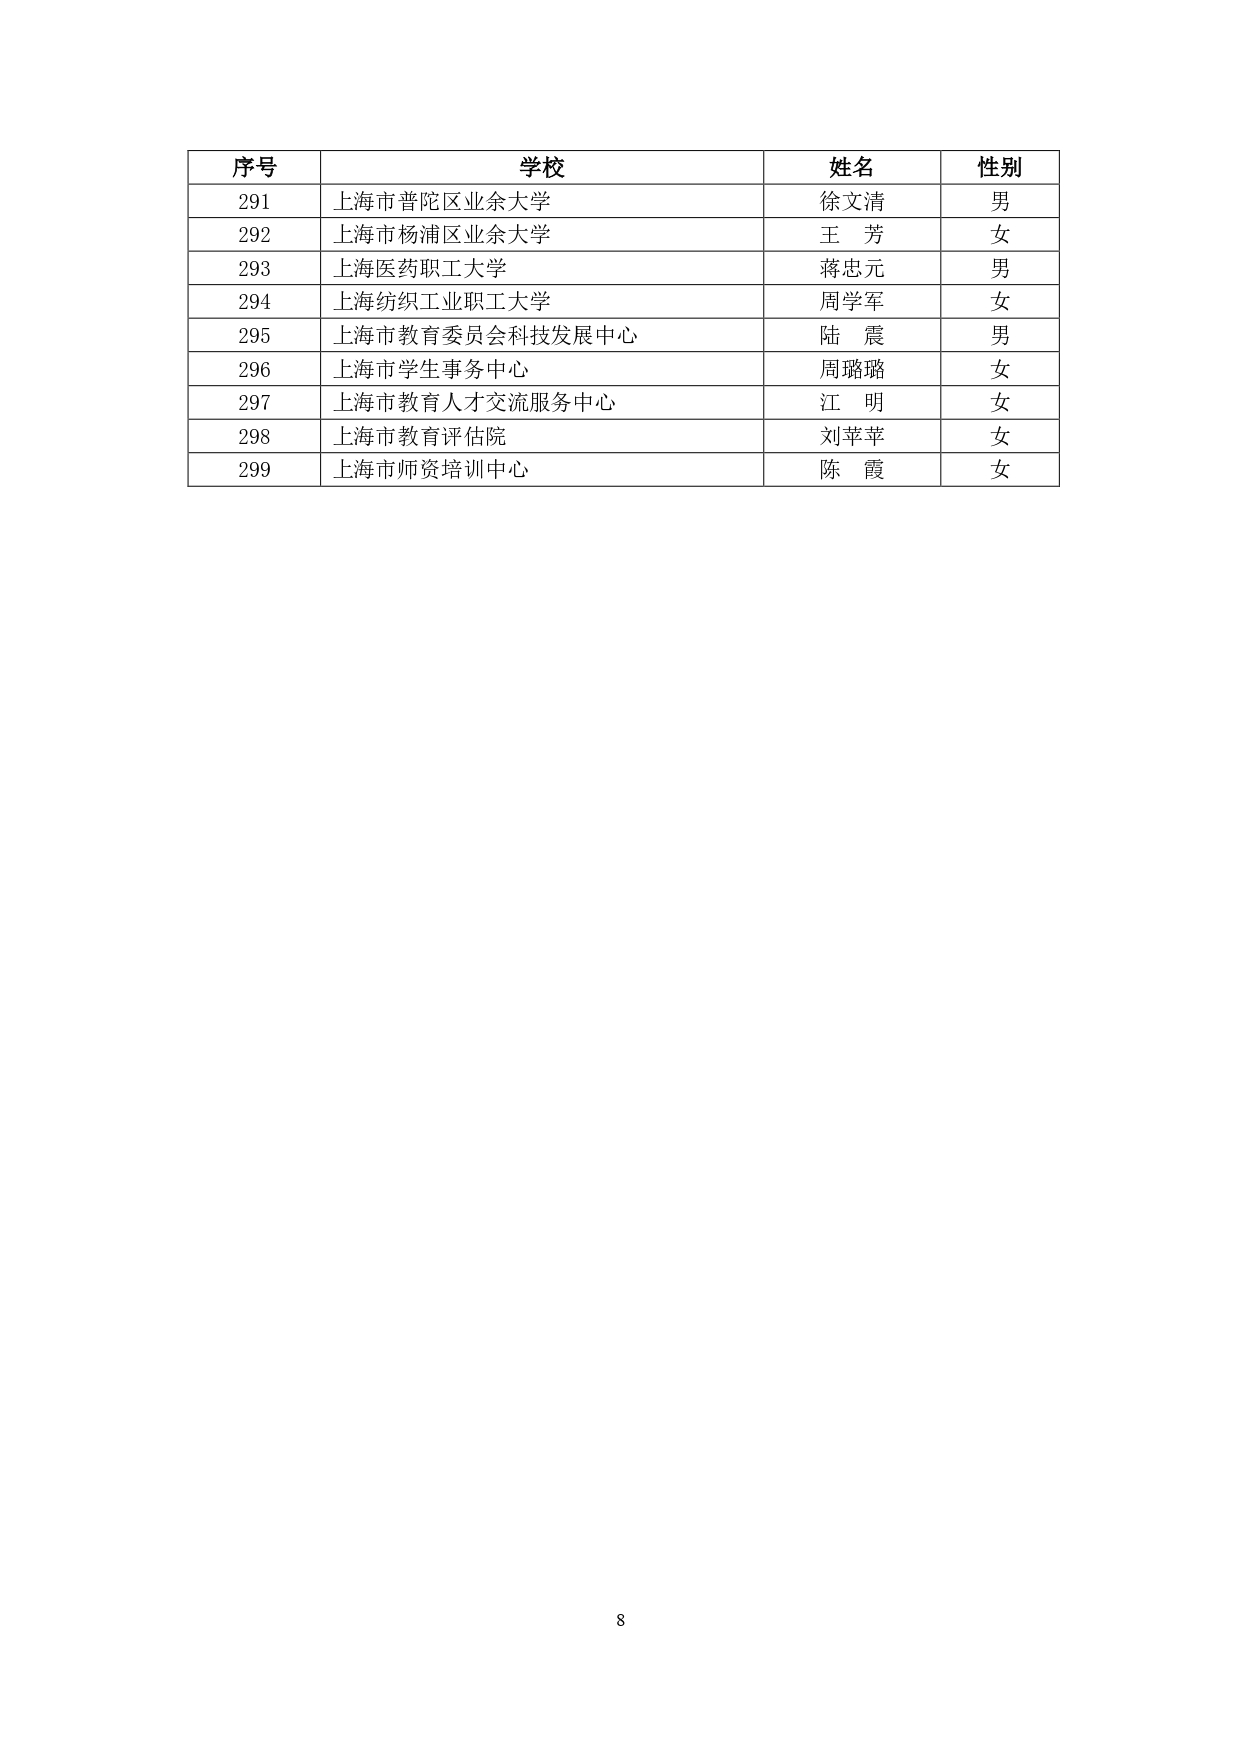 2019年“上海市育才奖”获得名单汇总表（最终名单）_page-0008.jpg